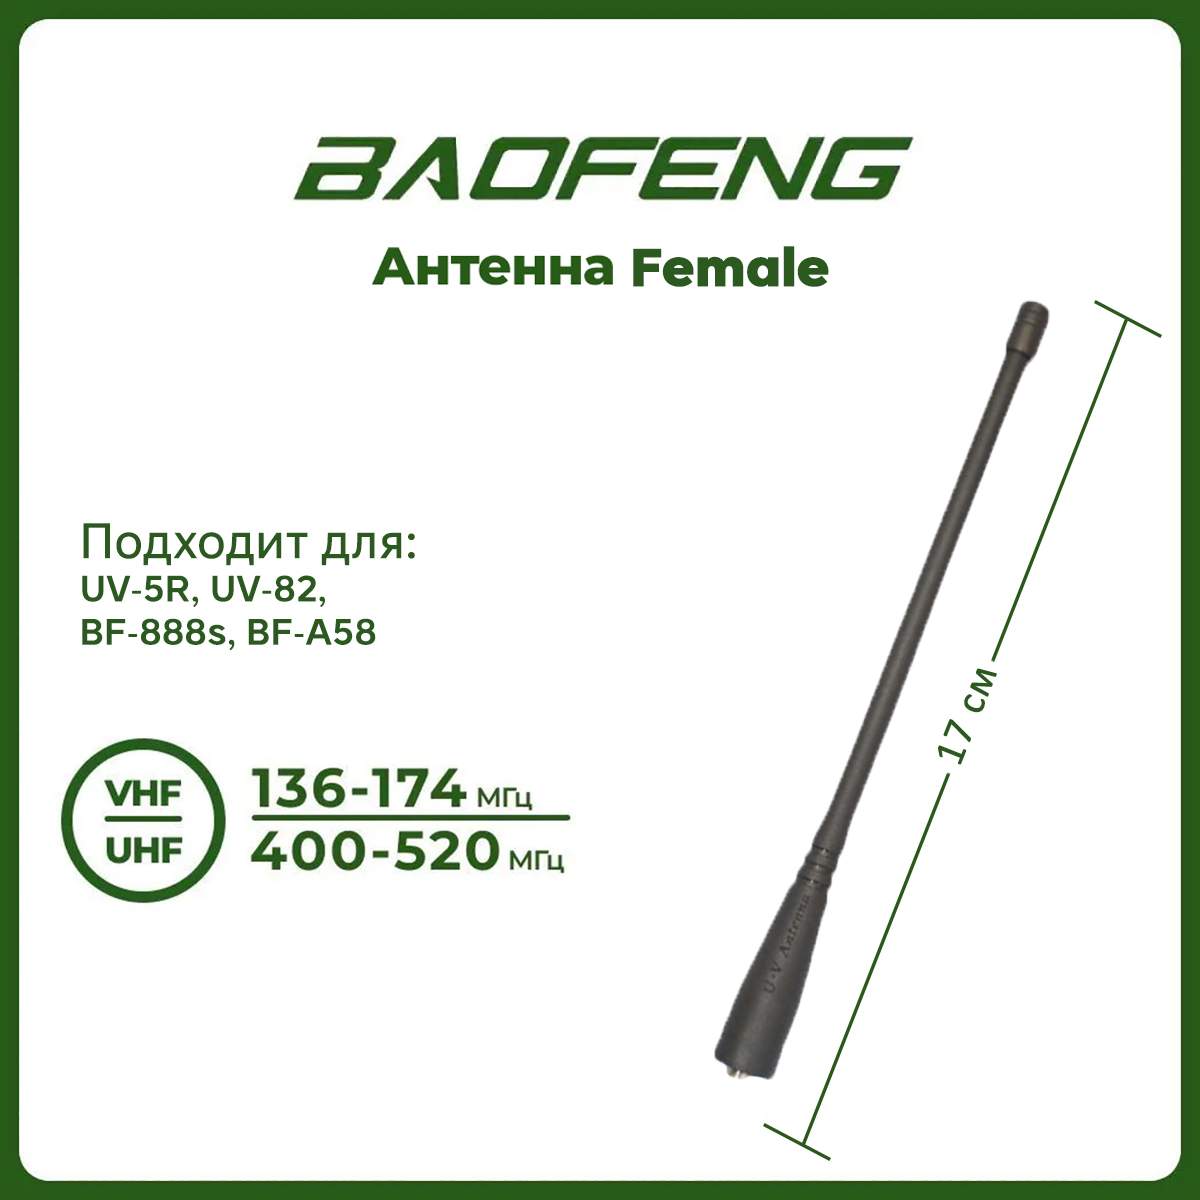 Нестандартные аксессуары для Baofeng UV-5R: антенны, аккумуляторы, чехлы